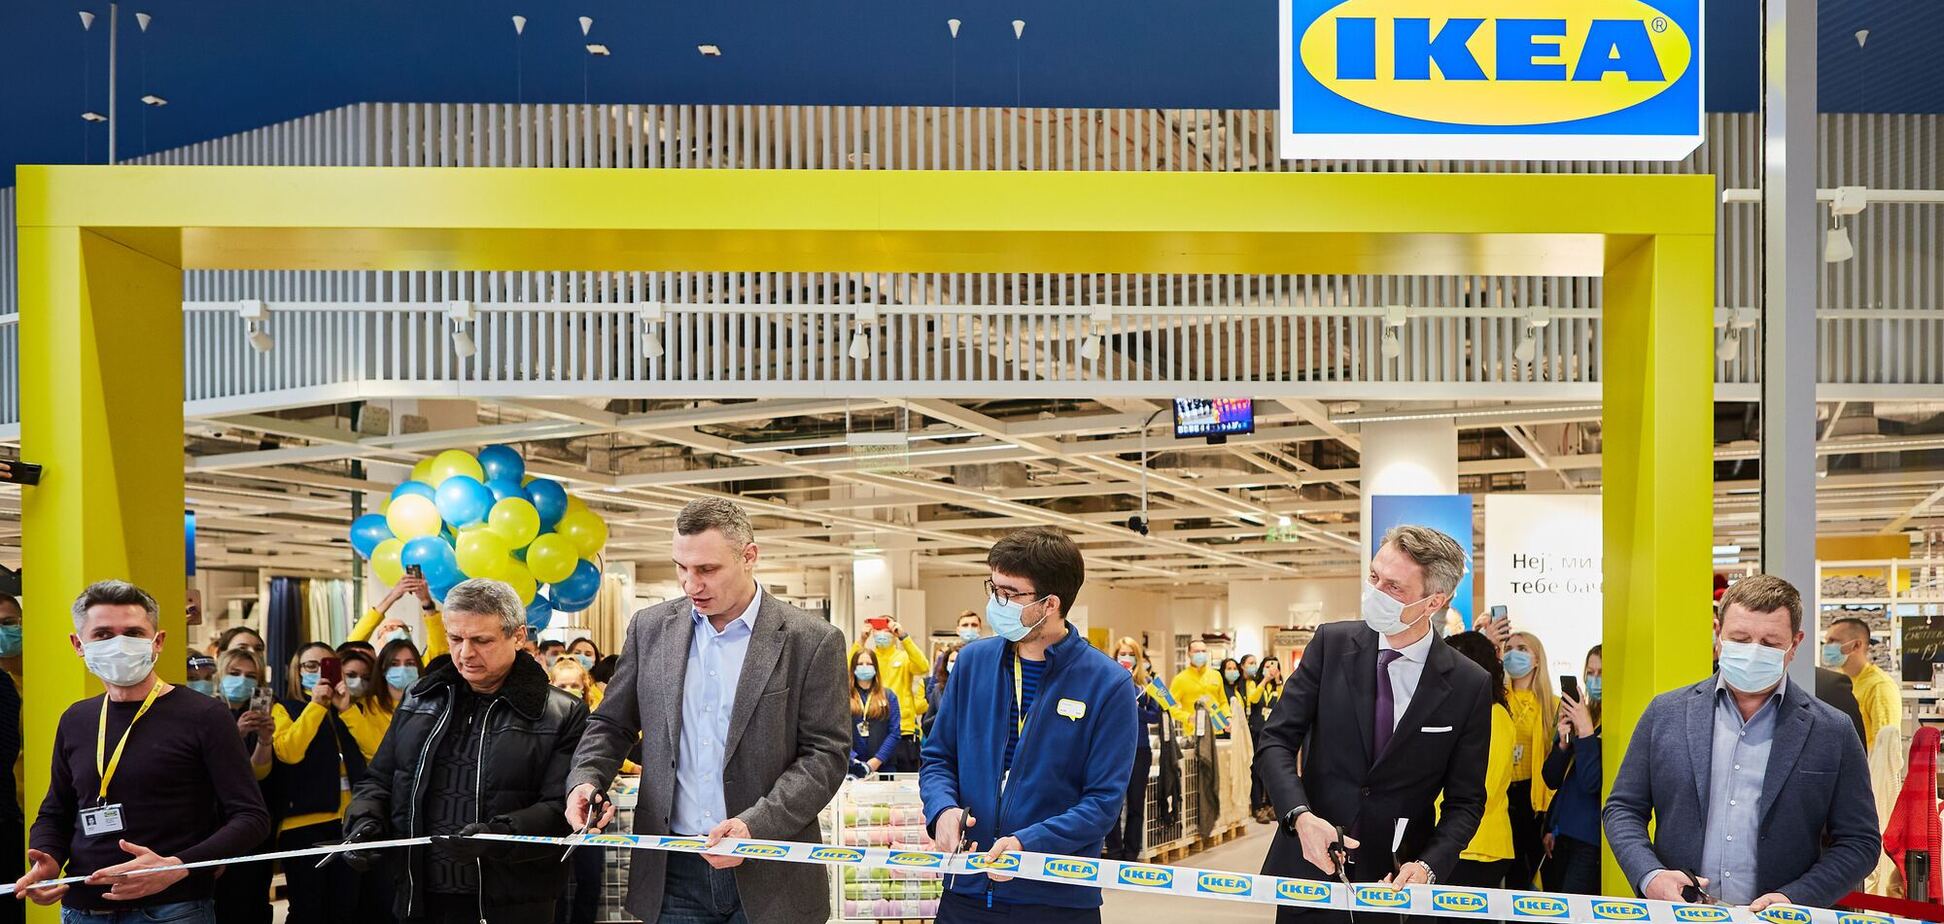 Відкриття першого магазину Ikea в Києві